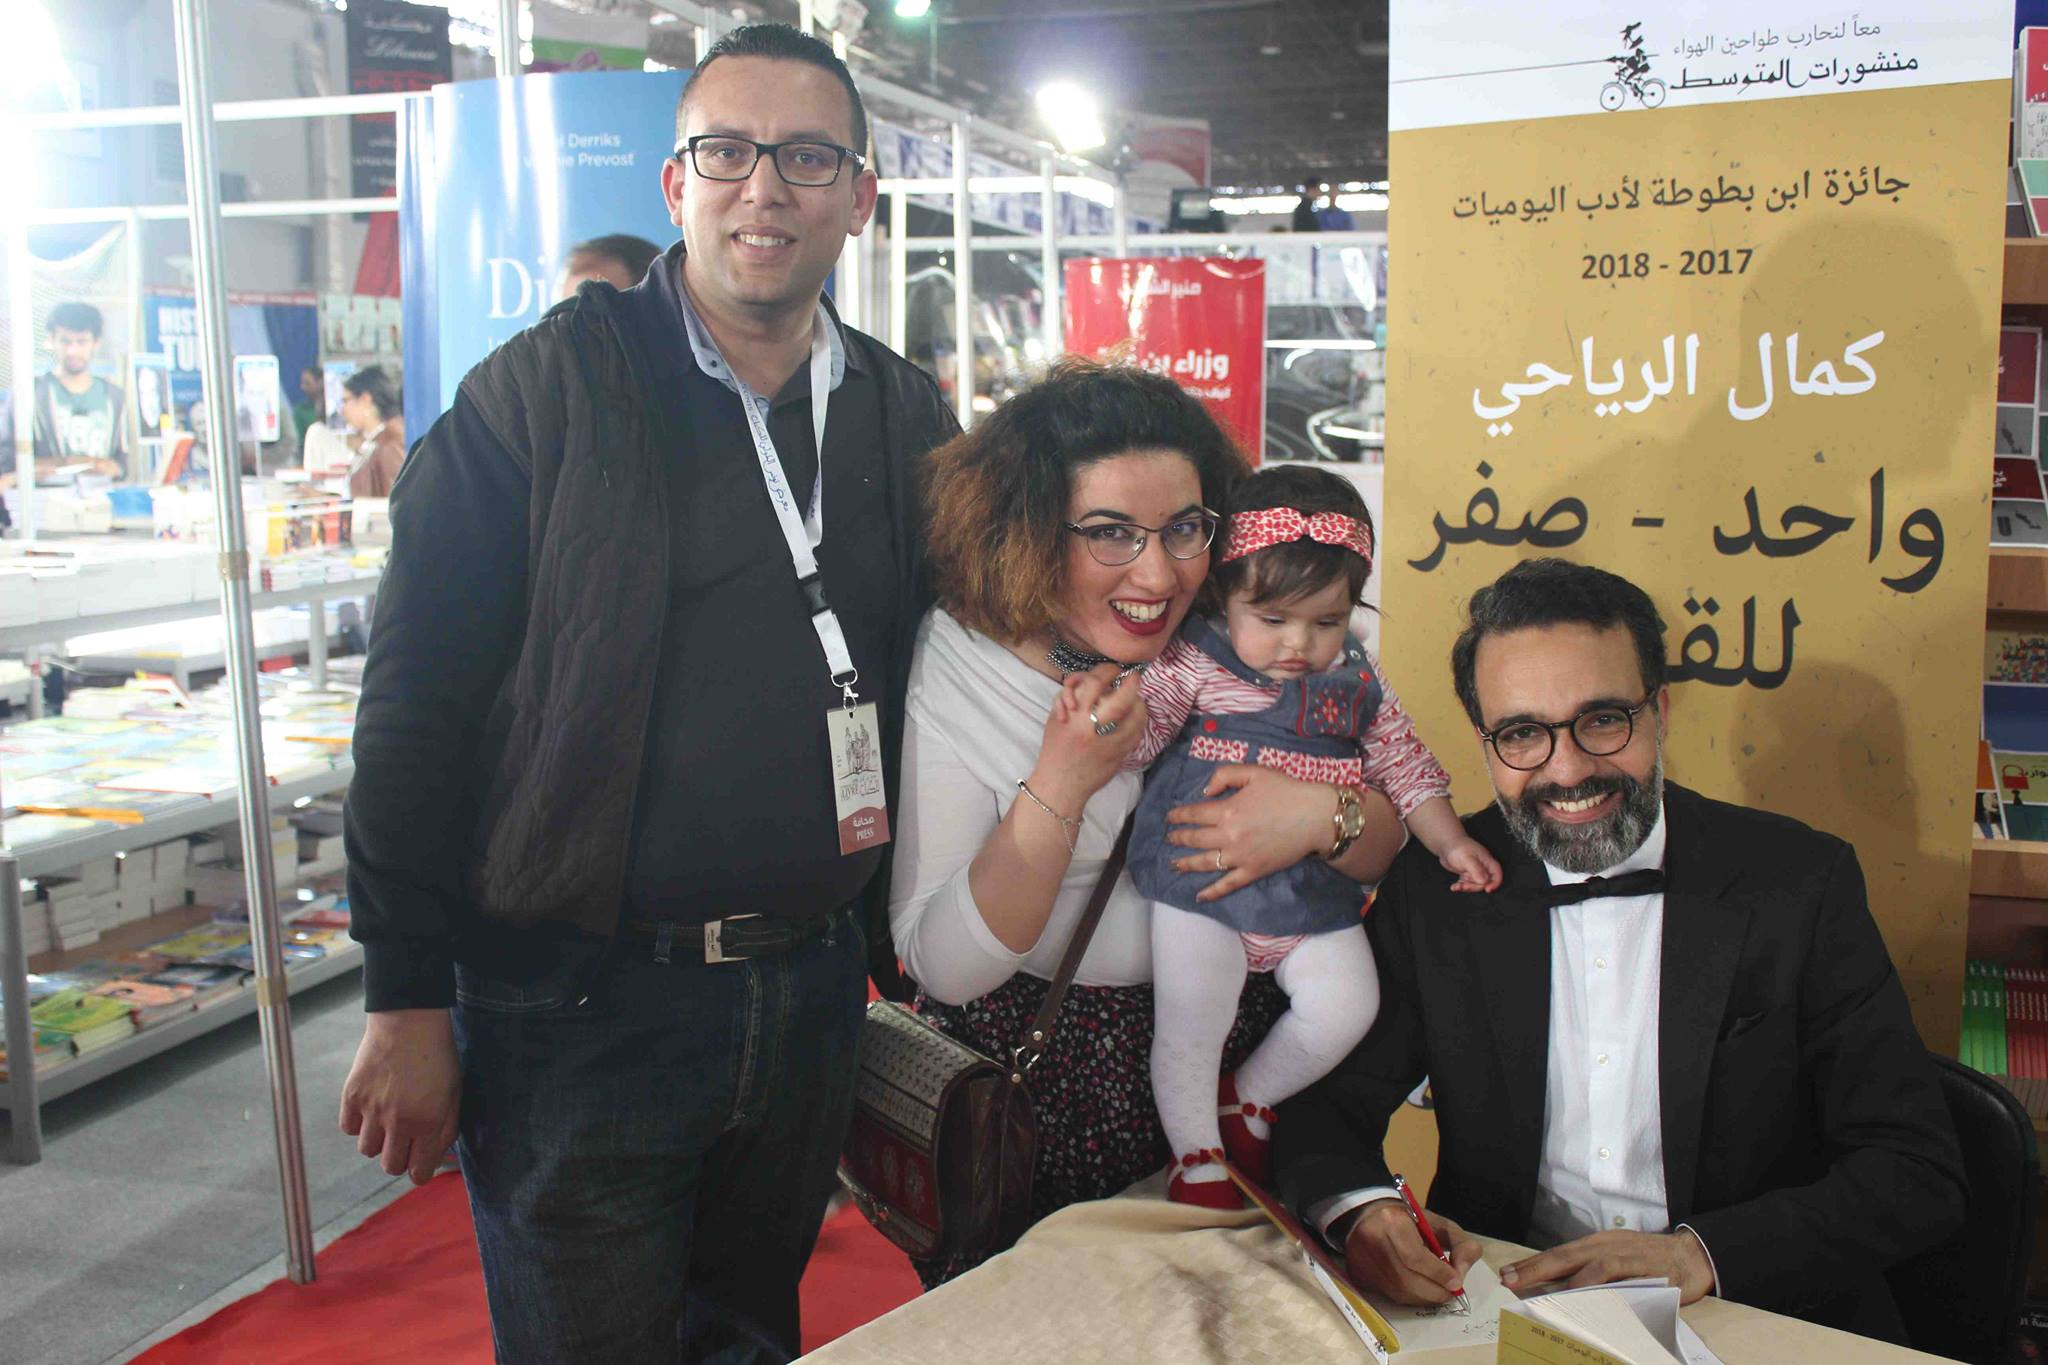 كمال الرياحى يوقع كتابه واحد صفر للقتيل الفائز بجائزة ابن بطوطة فى معرض تونس (19)